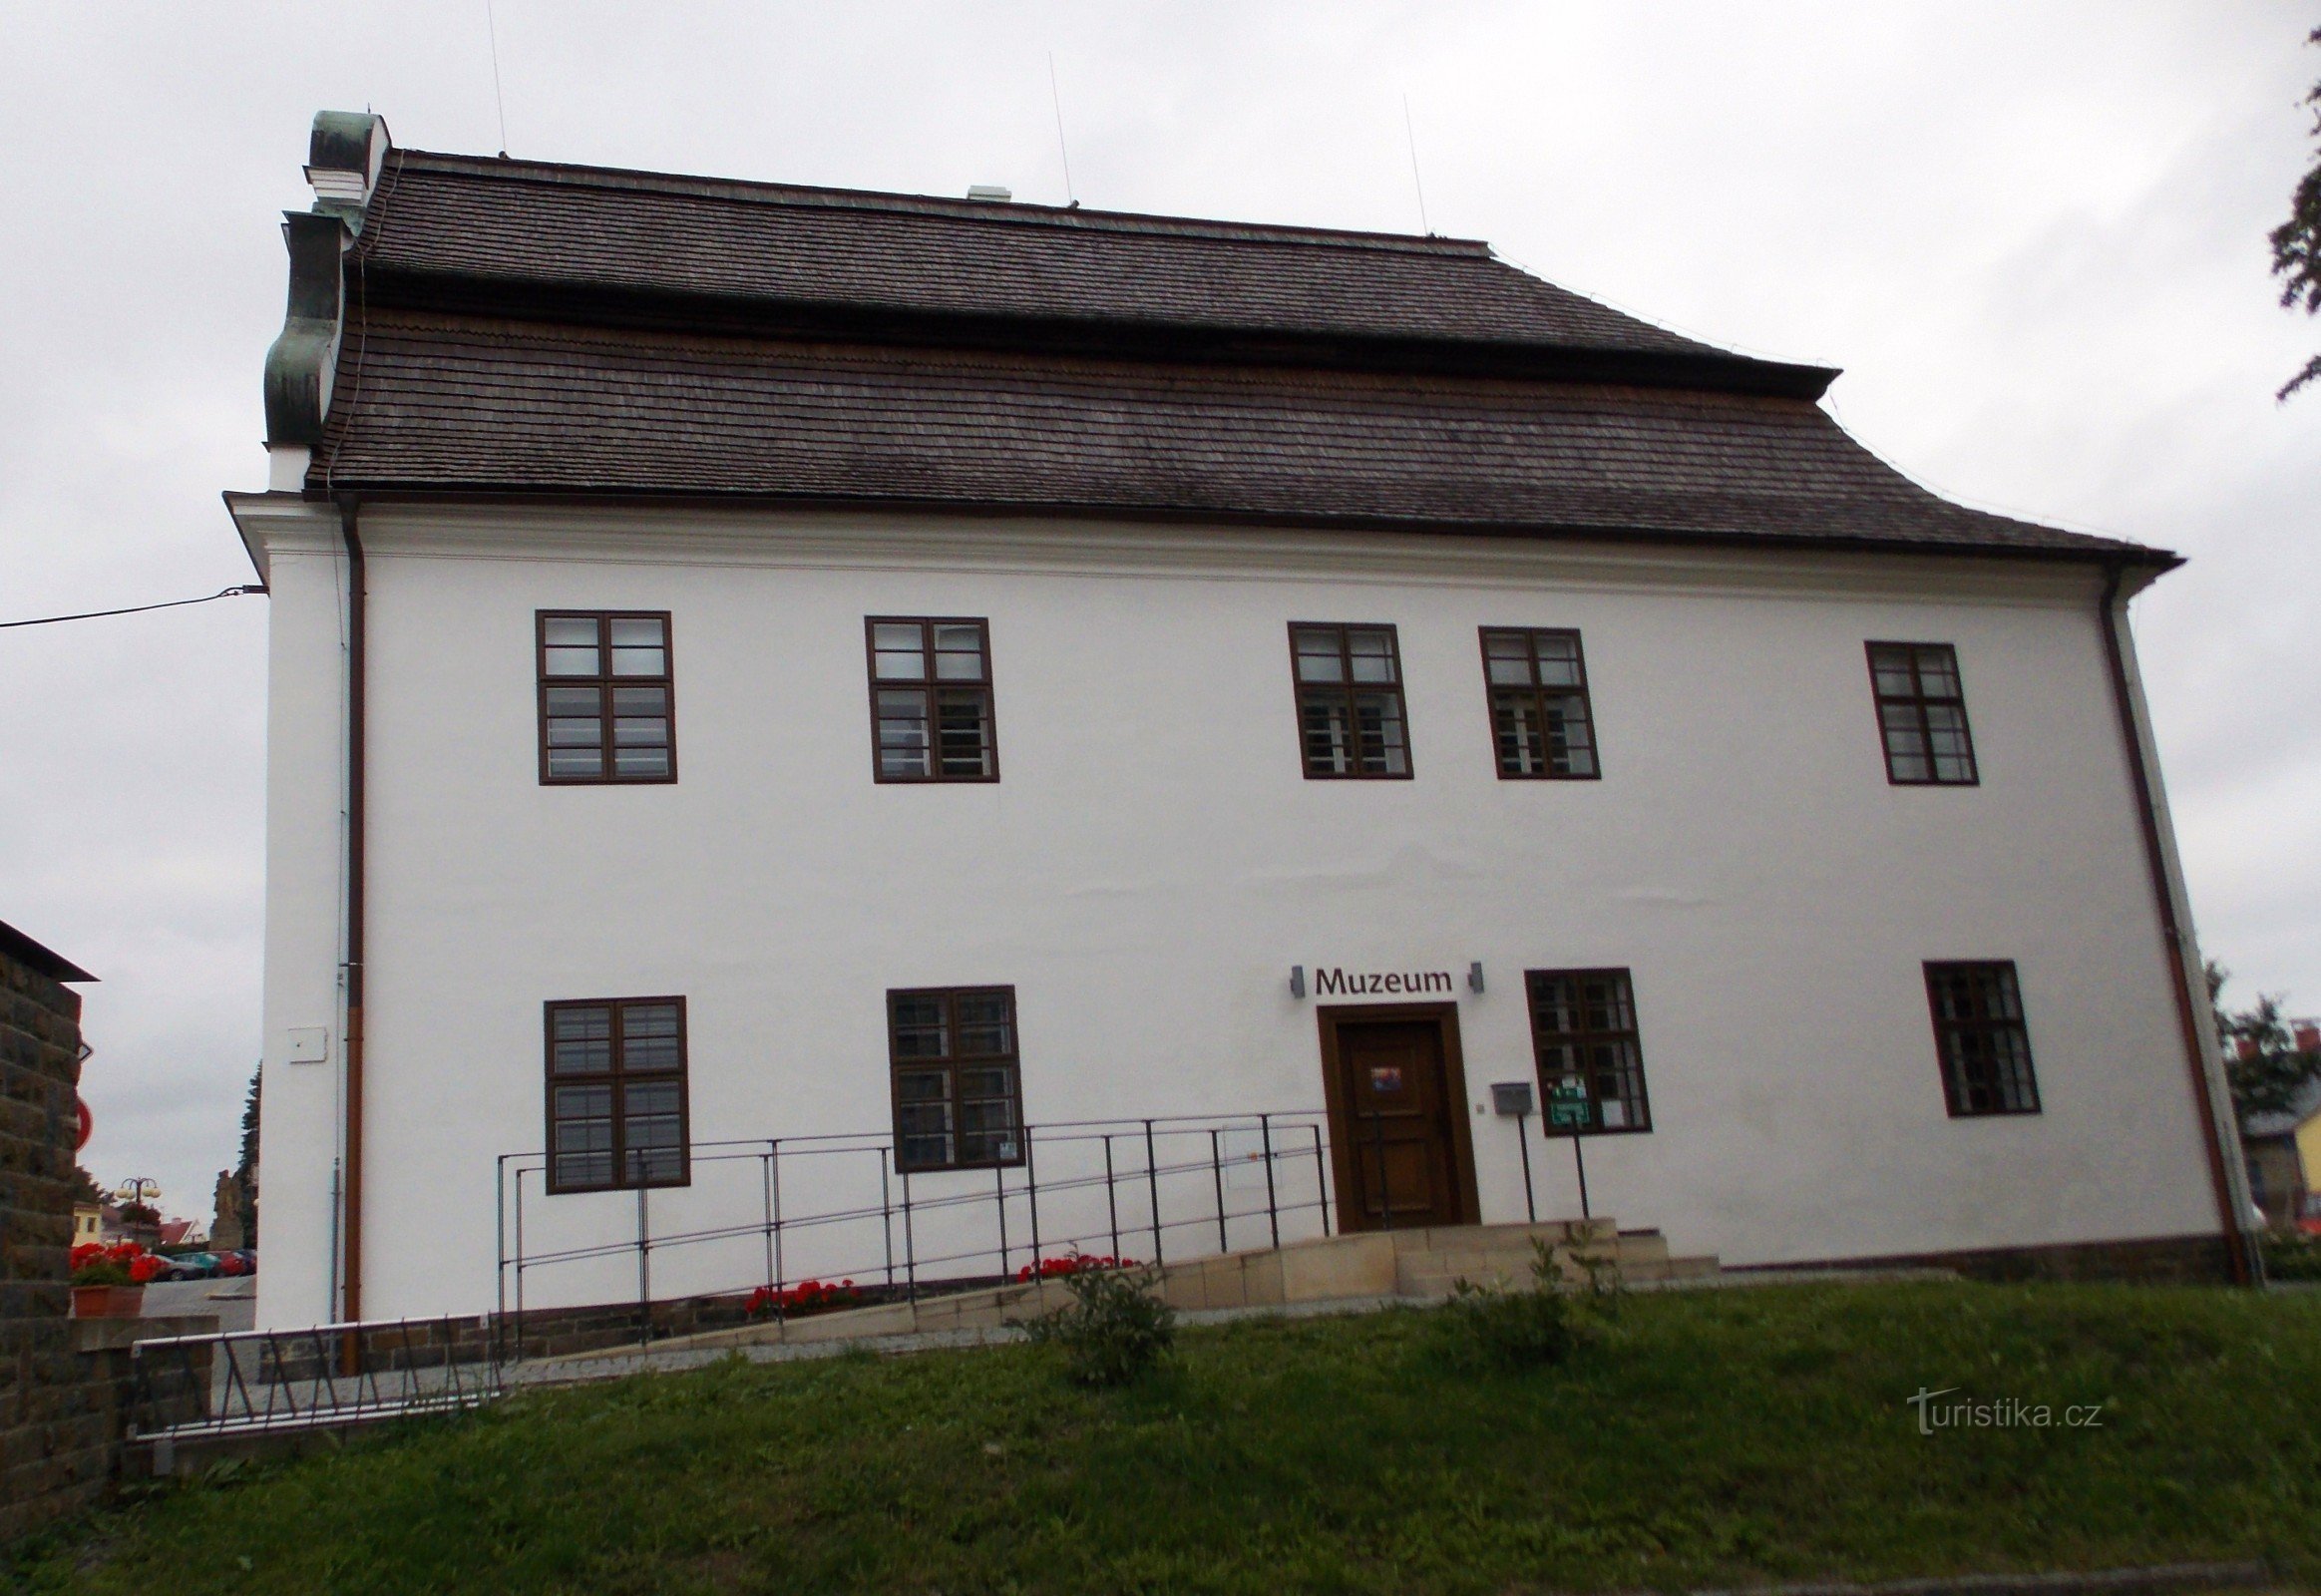 Naar het museum in Bílovec